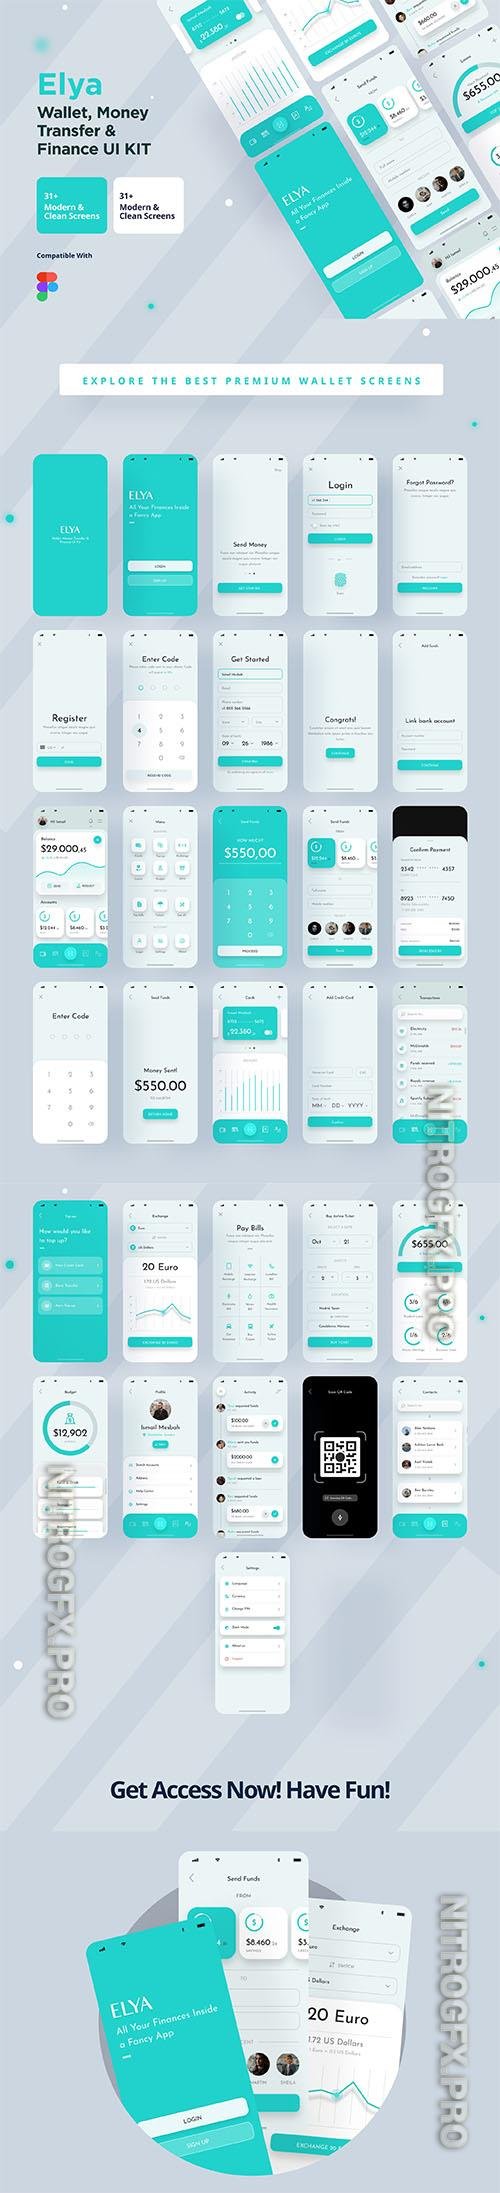 UI8 - Elya App Kit For Wallet, Finance and Money Transfer Kit